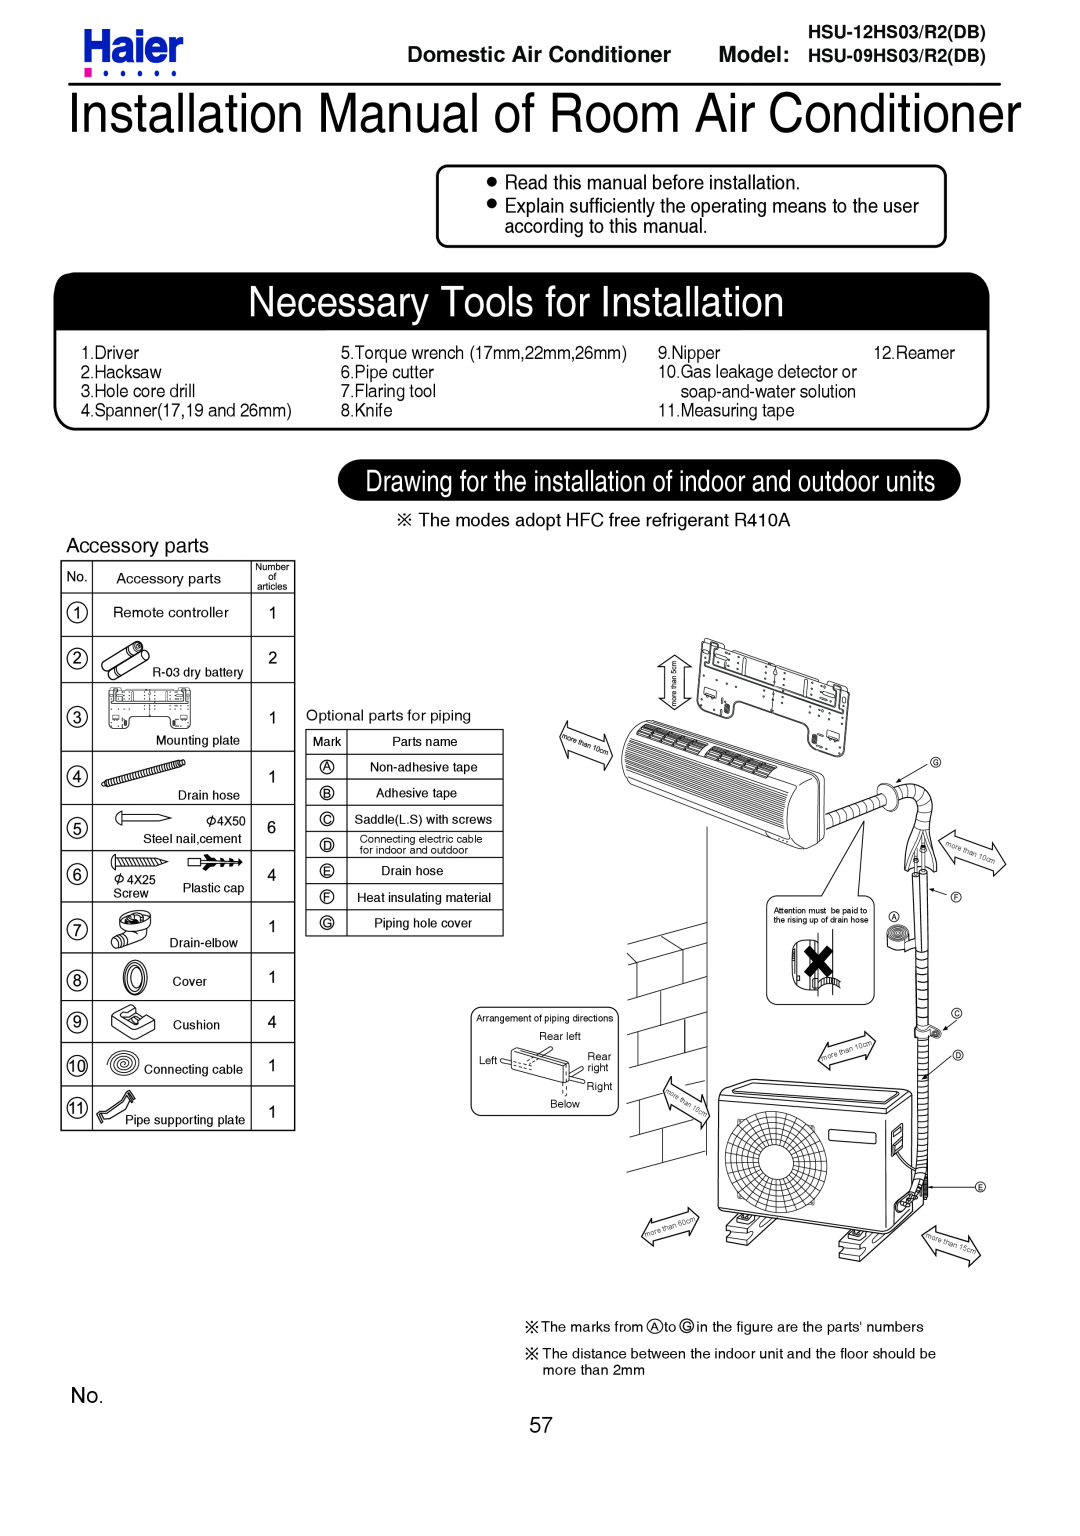 Haier HSU-12HS03/R2DB Installation Manual of Room Air Conditioner, Necessary Tools for Installation, Model HSU-09HS03/R2DB 